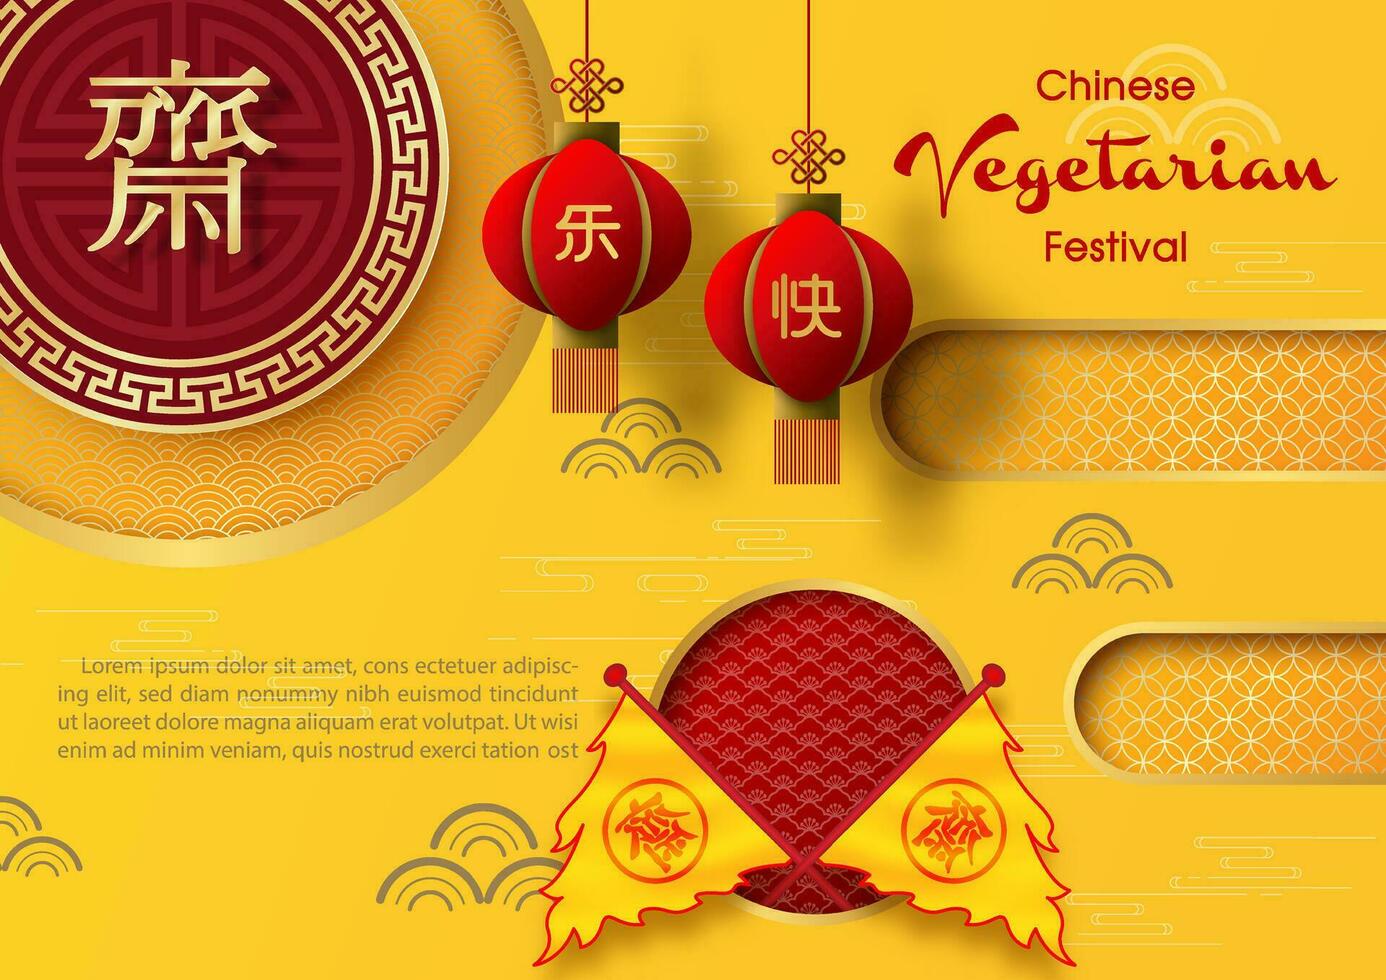 tarjeta de felicitación y publicidad de afiches del festival vegetariano chino en estilo de corte de papel y diseño vectorial. Las letras chinas doradas significan ayuno para adorar a Buda en inglés. vector